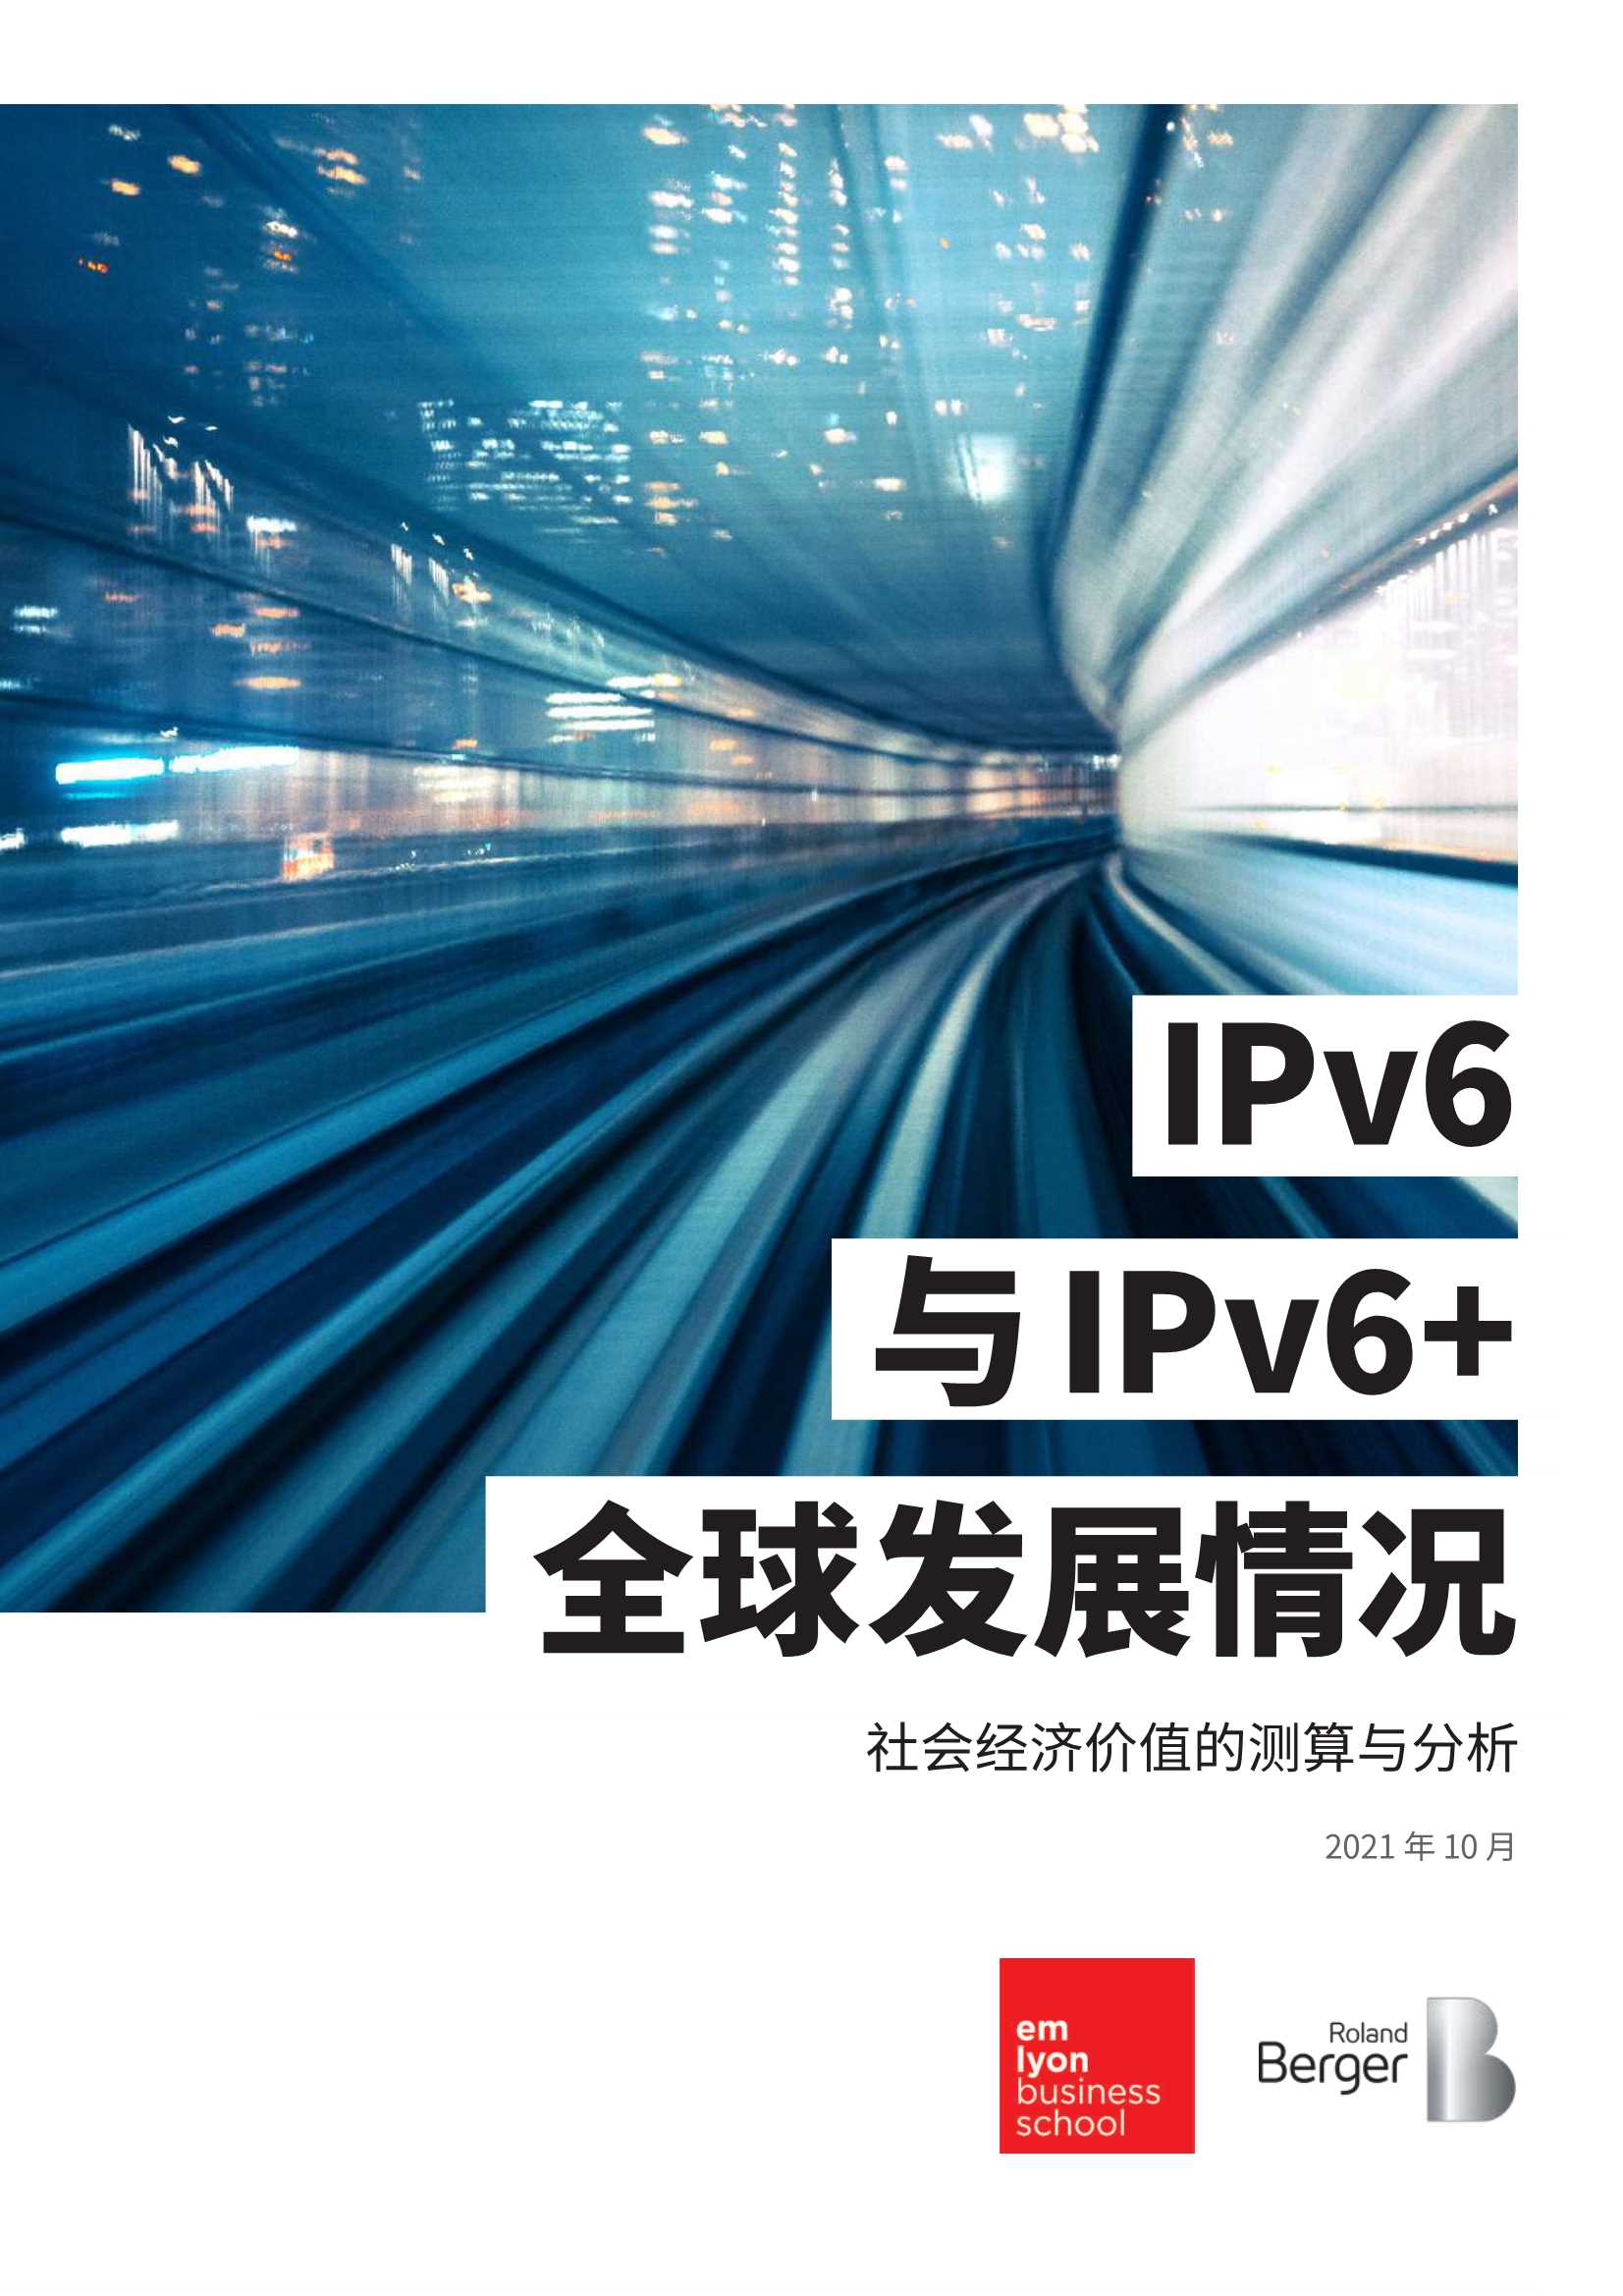 2021年IPv6与IPv6 全球发展情况以及社会经济价值的分析-2021.12-19页